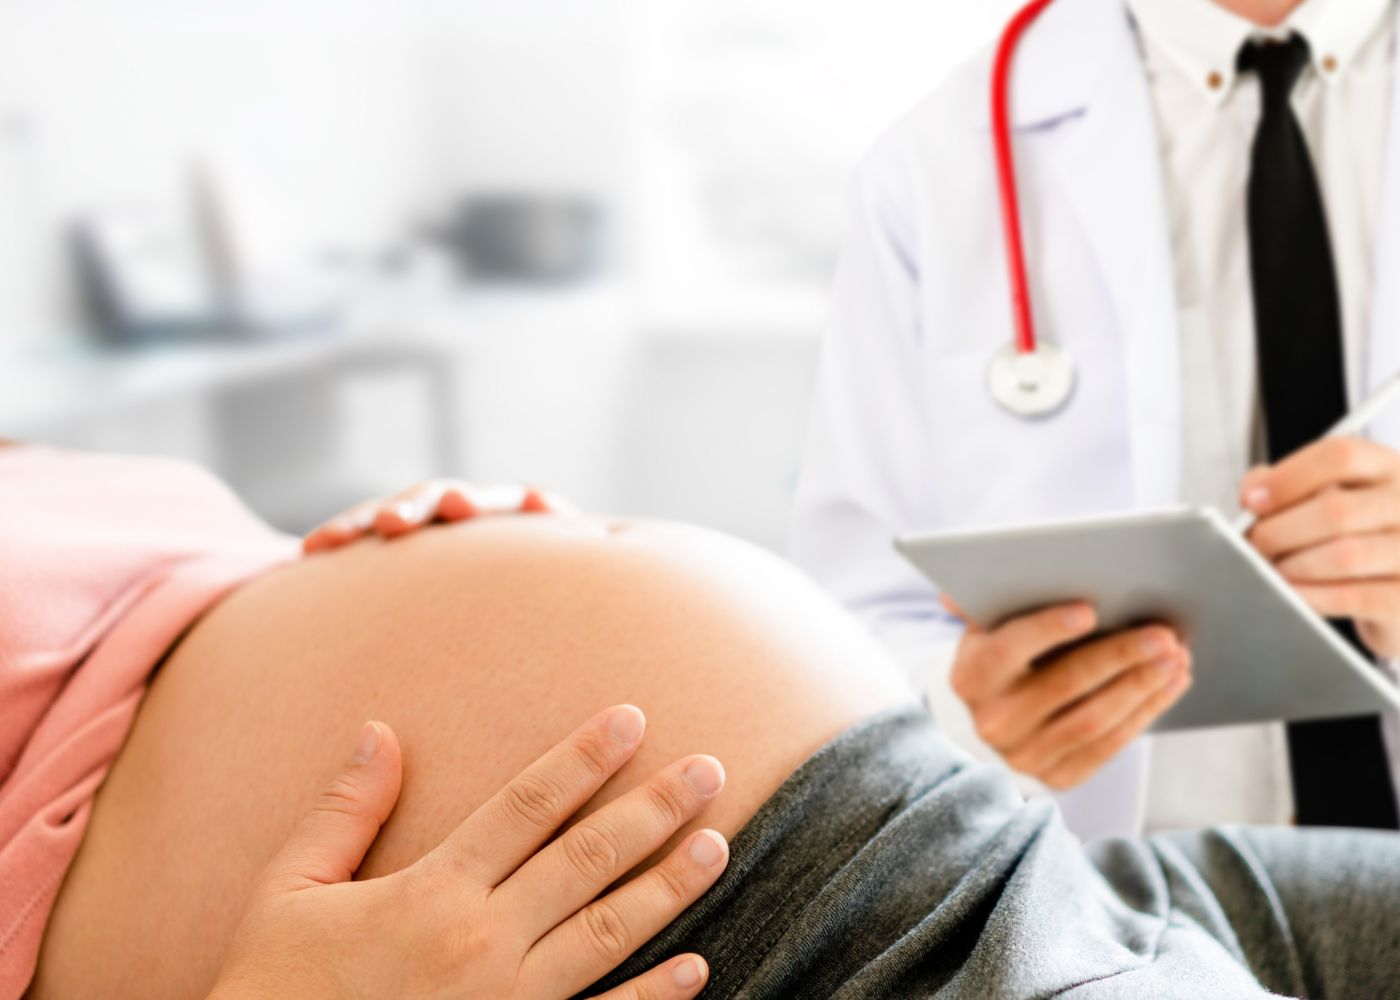 grávida no médico